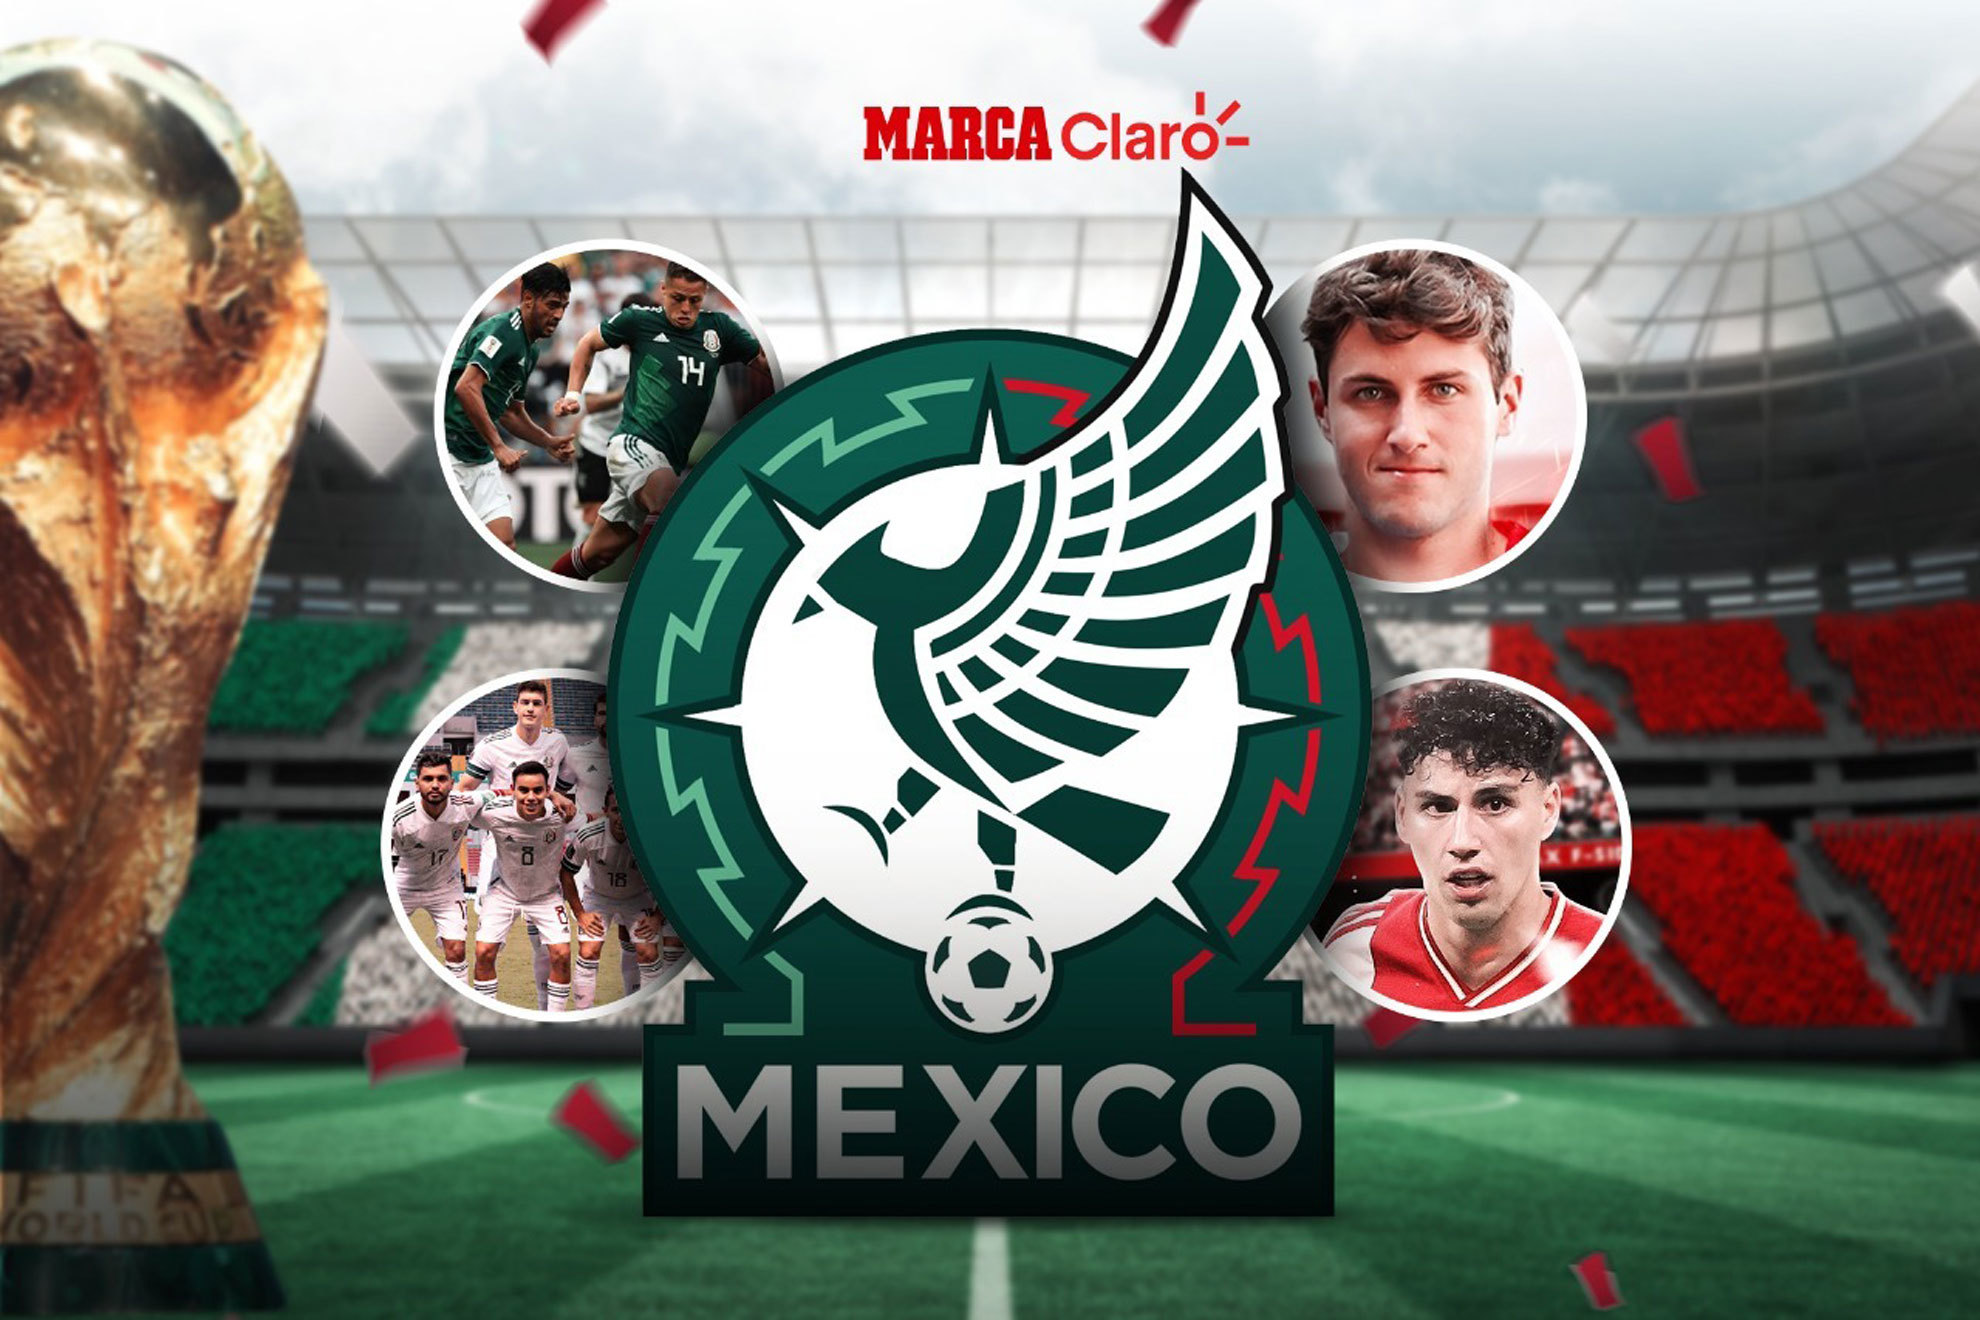 Así se ve la selección mexicana a 100 días del inicio del Mundial. | MARCA Claro